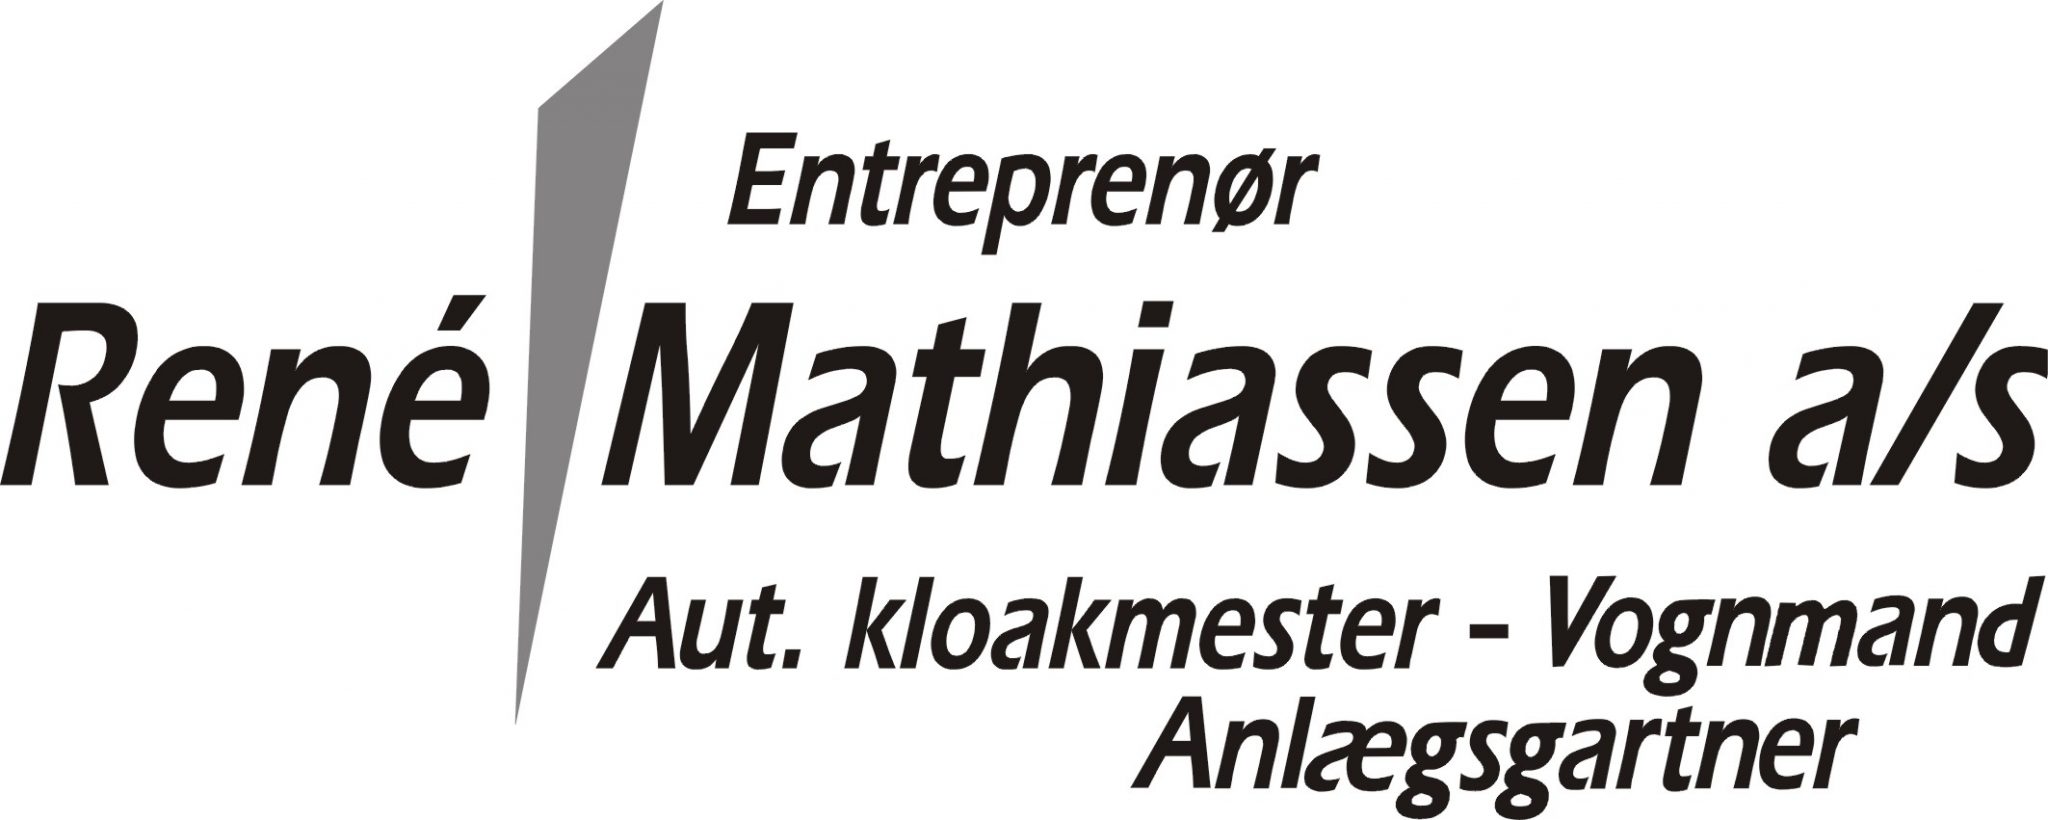 Entreprenør René Mathiassen A/S